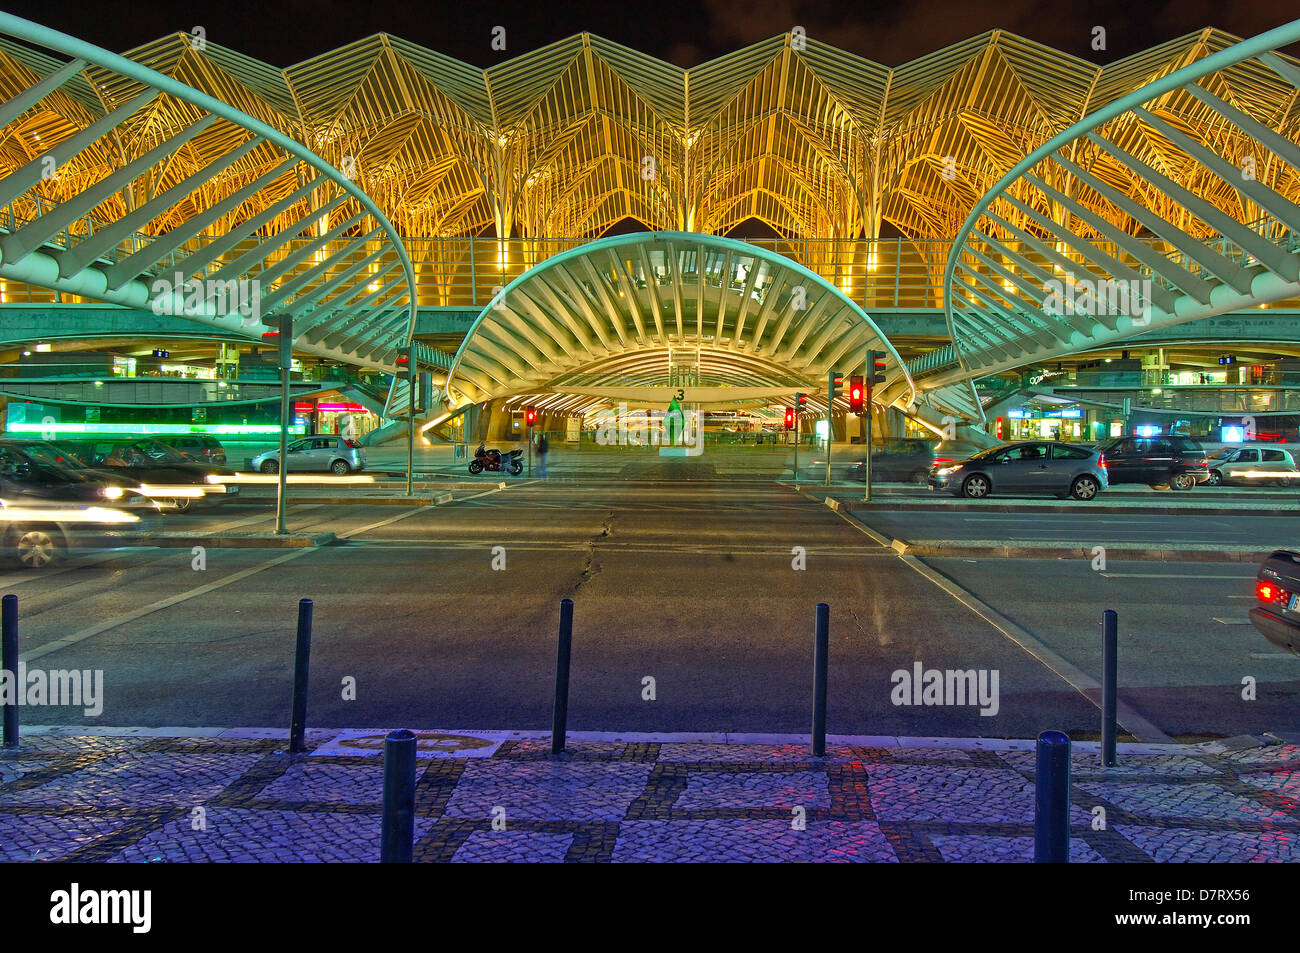 Oriente stazione ferroviaria da Santiagio Calatrava al crepuscolo, Gare do Oriente al tramonto. Parque das Nações. Lisbona, Portogallo Foto Stock